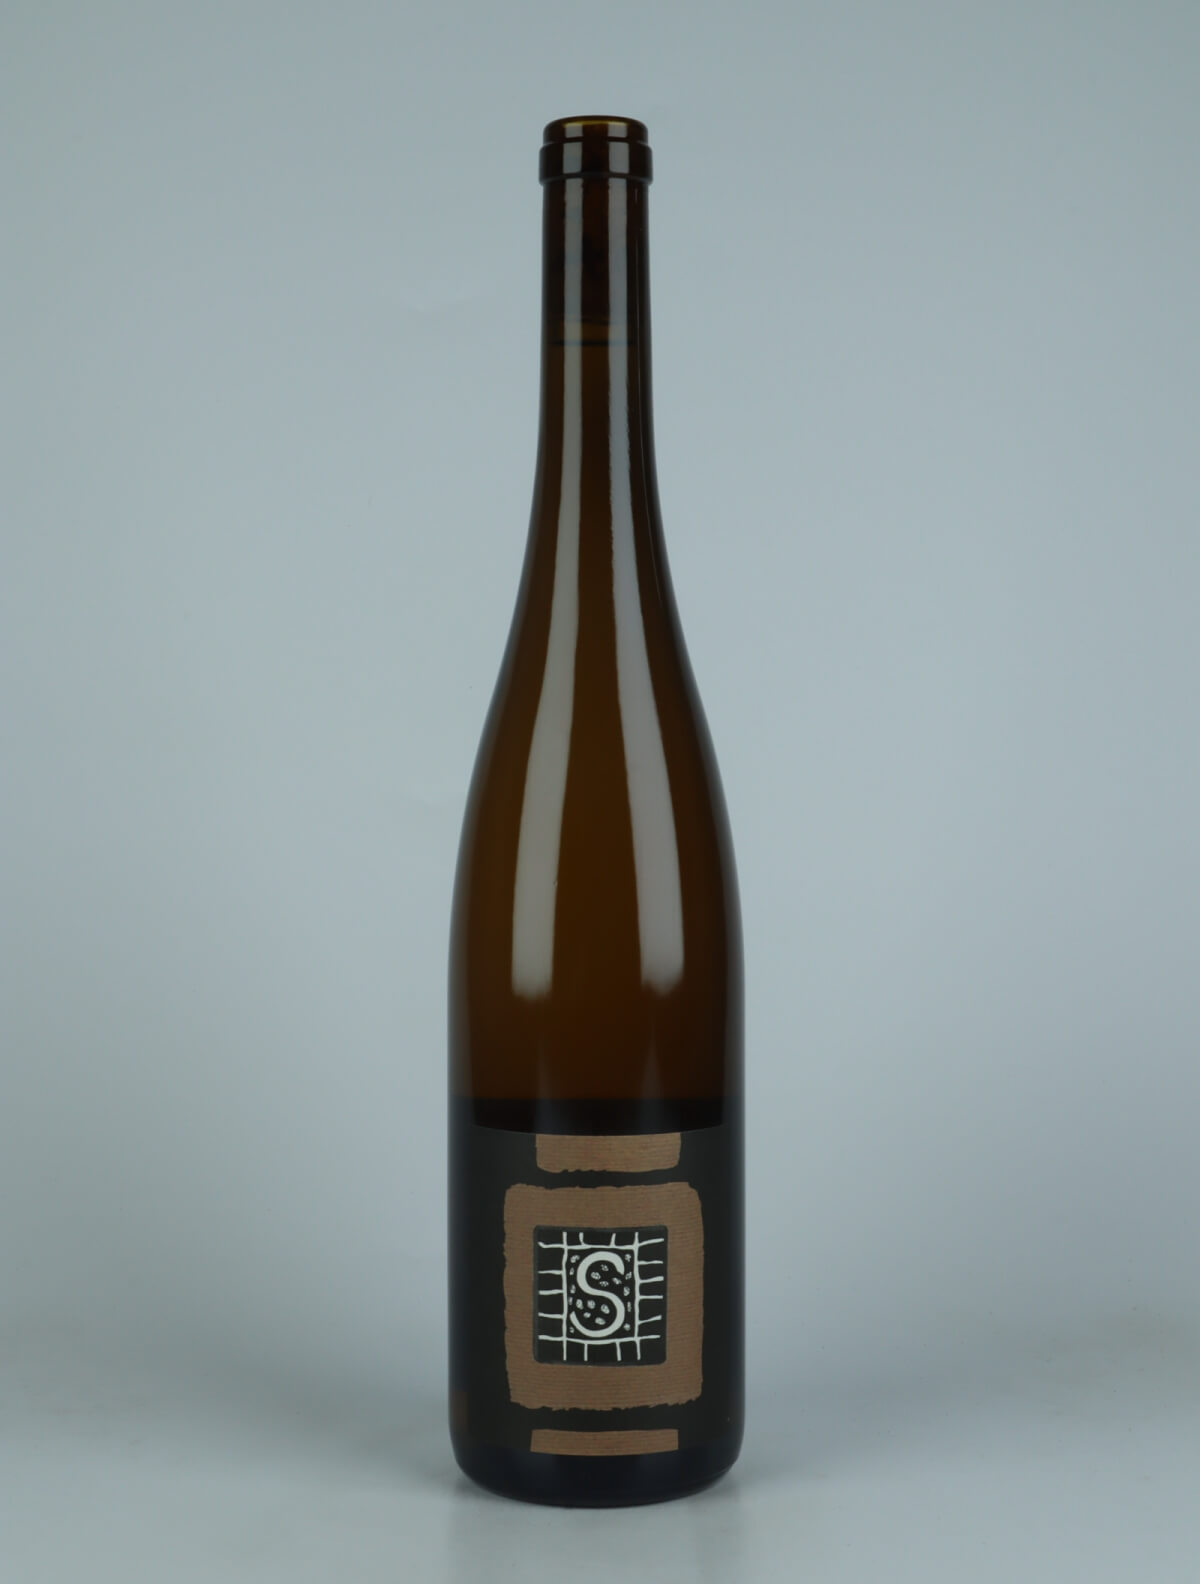 En flaske N.V. (20/23) Riesling - Stein Hvidvin fra Domaine Rietsch, Alsace i Frankrig